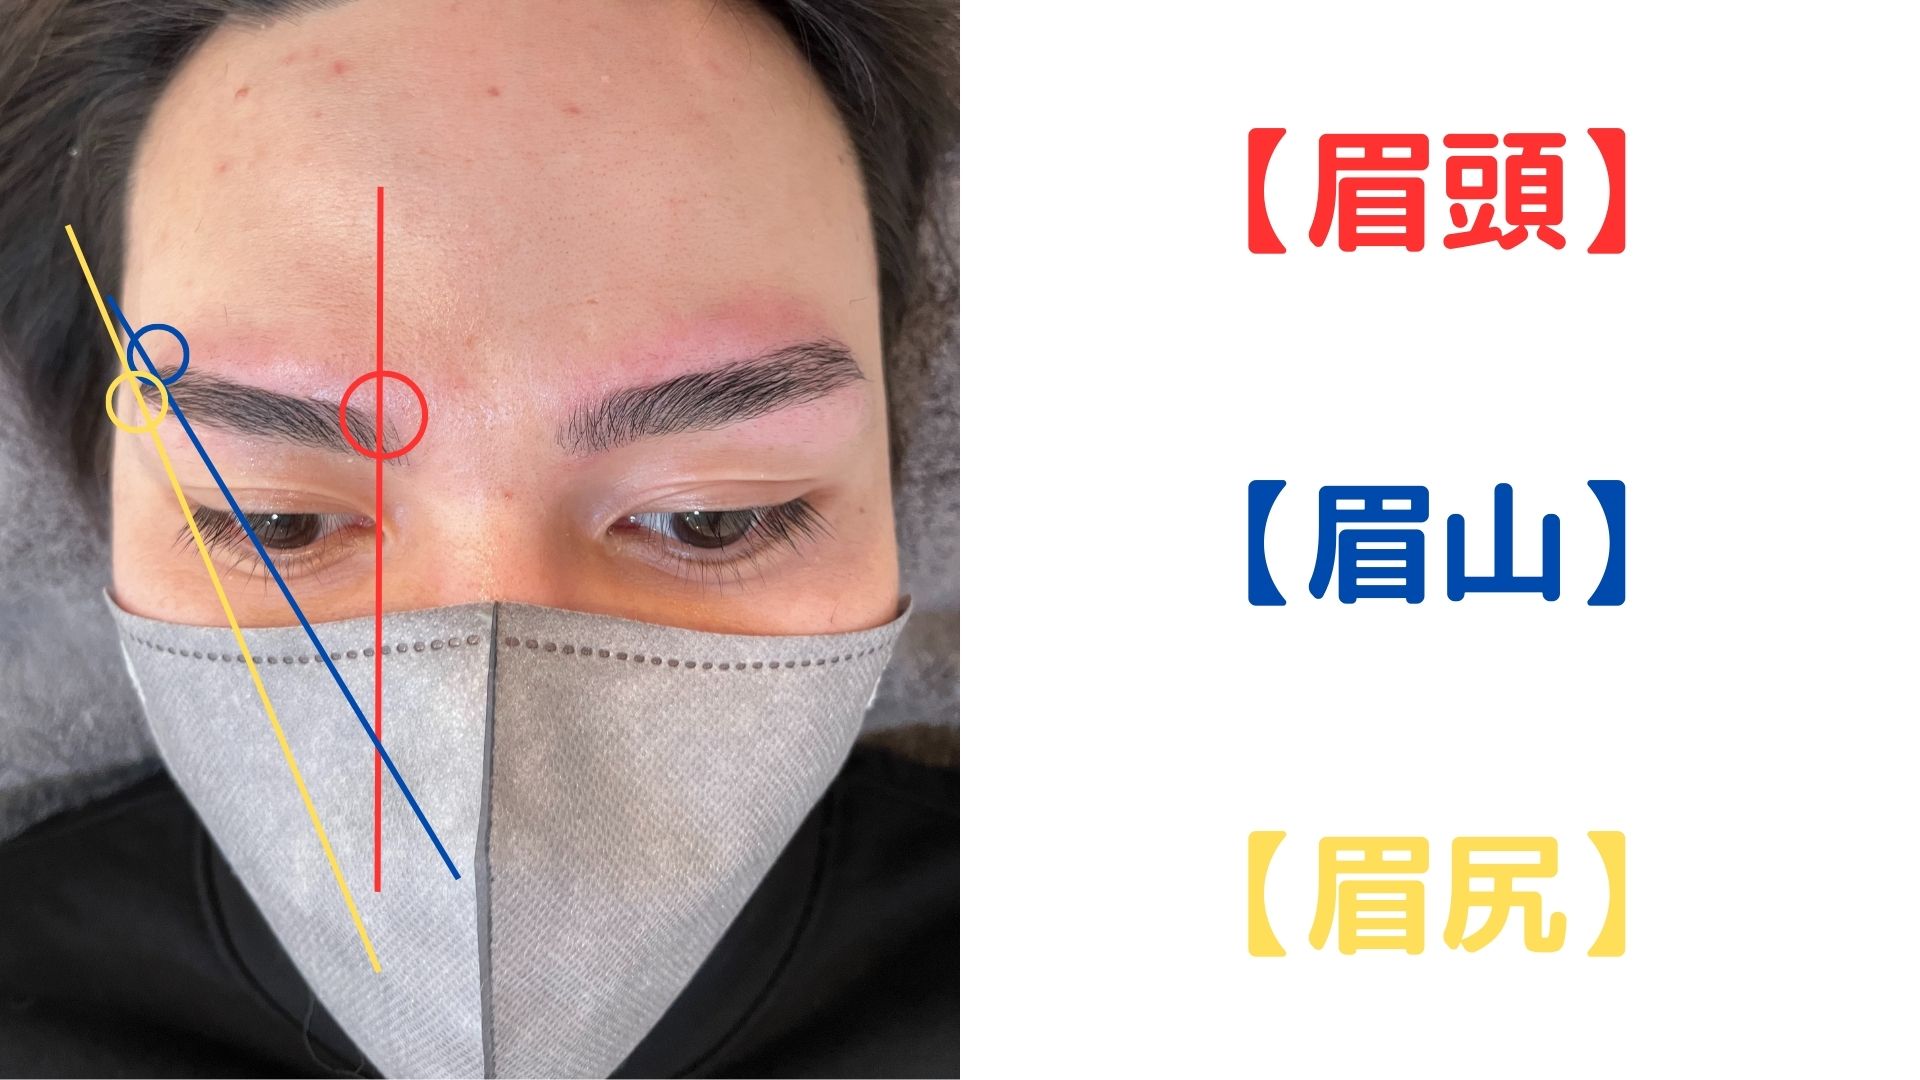 眉毛の相談所 by mayuyama男性の眉毛の黄金比の画像